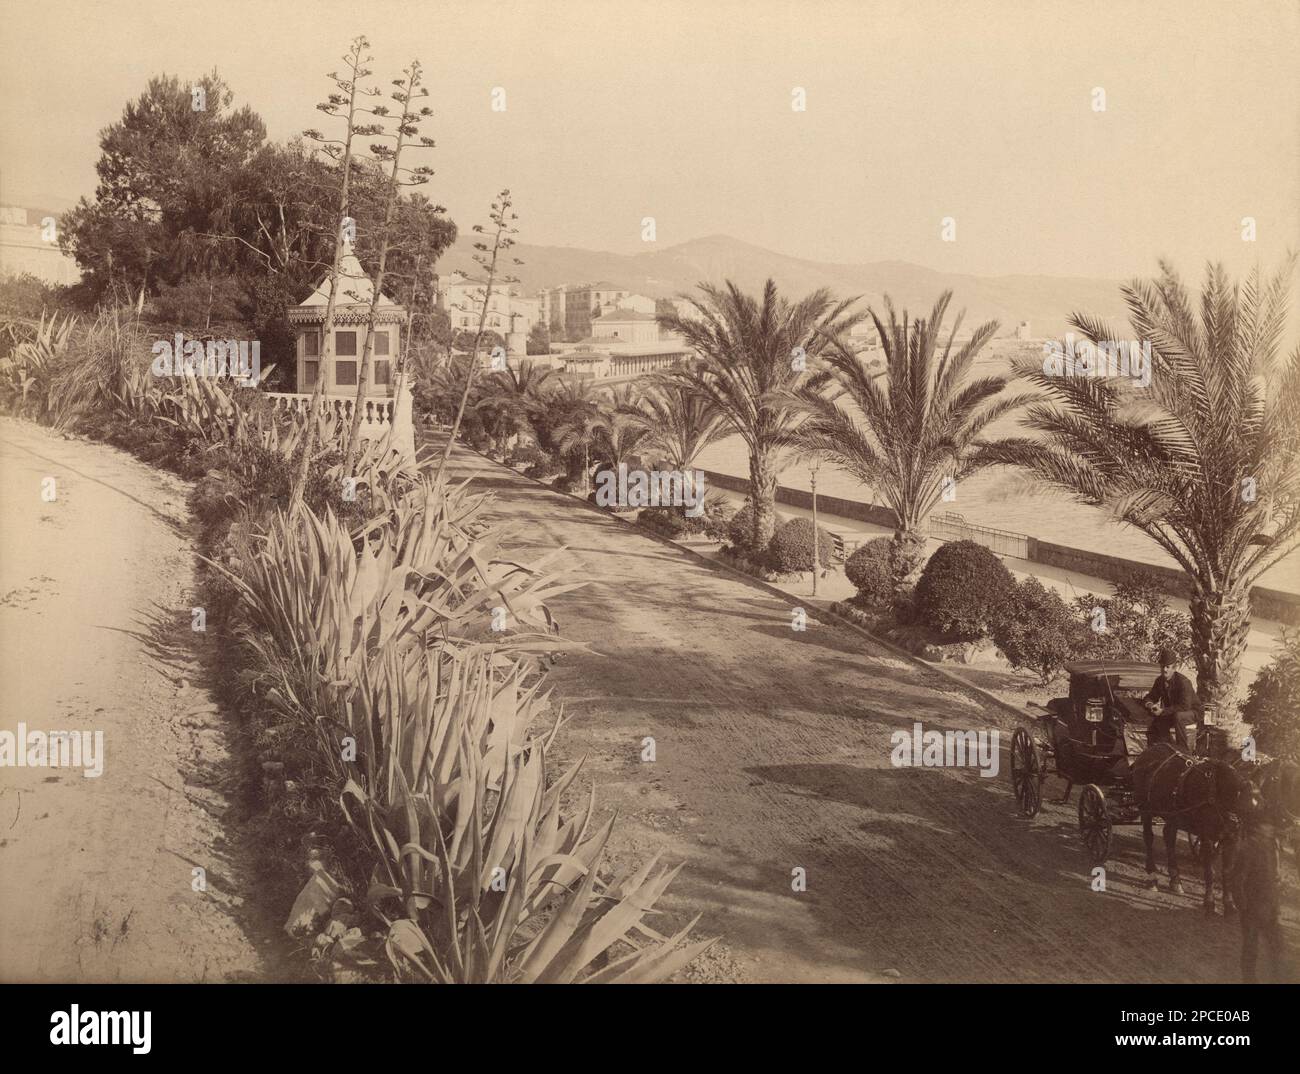 1888 Ca , SANREMO , IMPERIA, ITALIEN : The Promenade , SAN REMO ( Imperia ). Foto des Fotografen JEAN GILLETTA ( 1856 - 1933 ) - ITALIA - LIGURIEN - FOTO STORICHE - GESCHICHTE - GEOGRAFIEN - GEOGRAFIE - - BELLE EPOQUE - calesse - Coach - passeggiata panoramica - PANORAMA - Landschaft - palme - palma - Palmen - Stute - Meer - XIX SECOLO - OTTOCENTO - '800 - 800 's ---- Archivio GBB Stockfoto